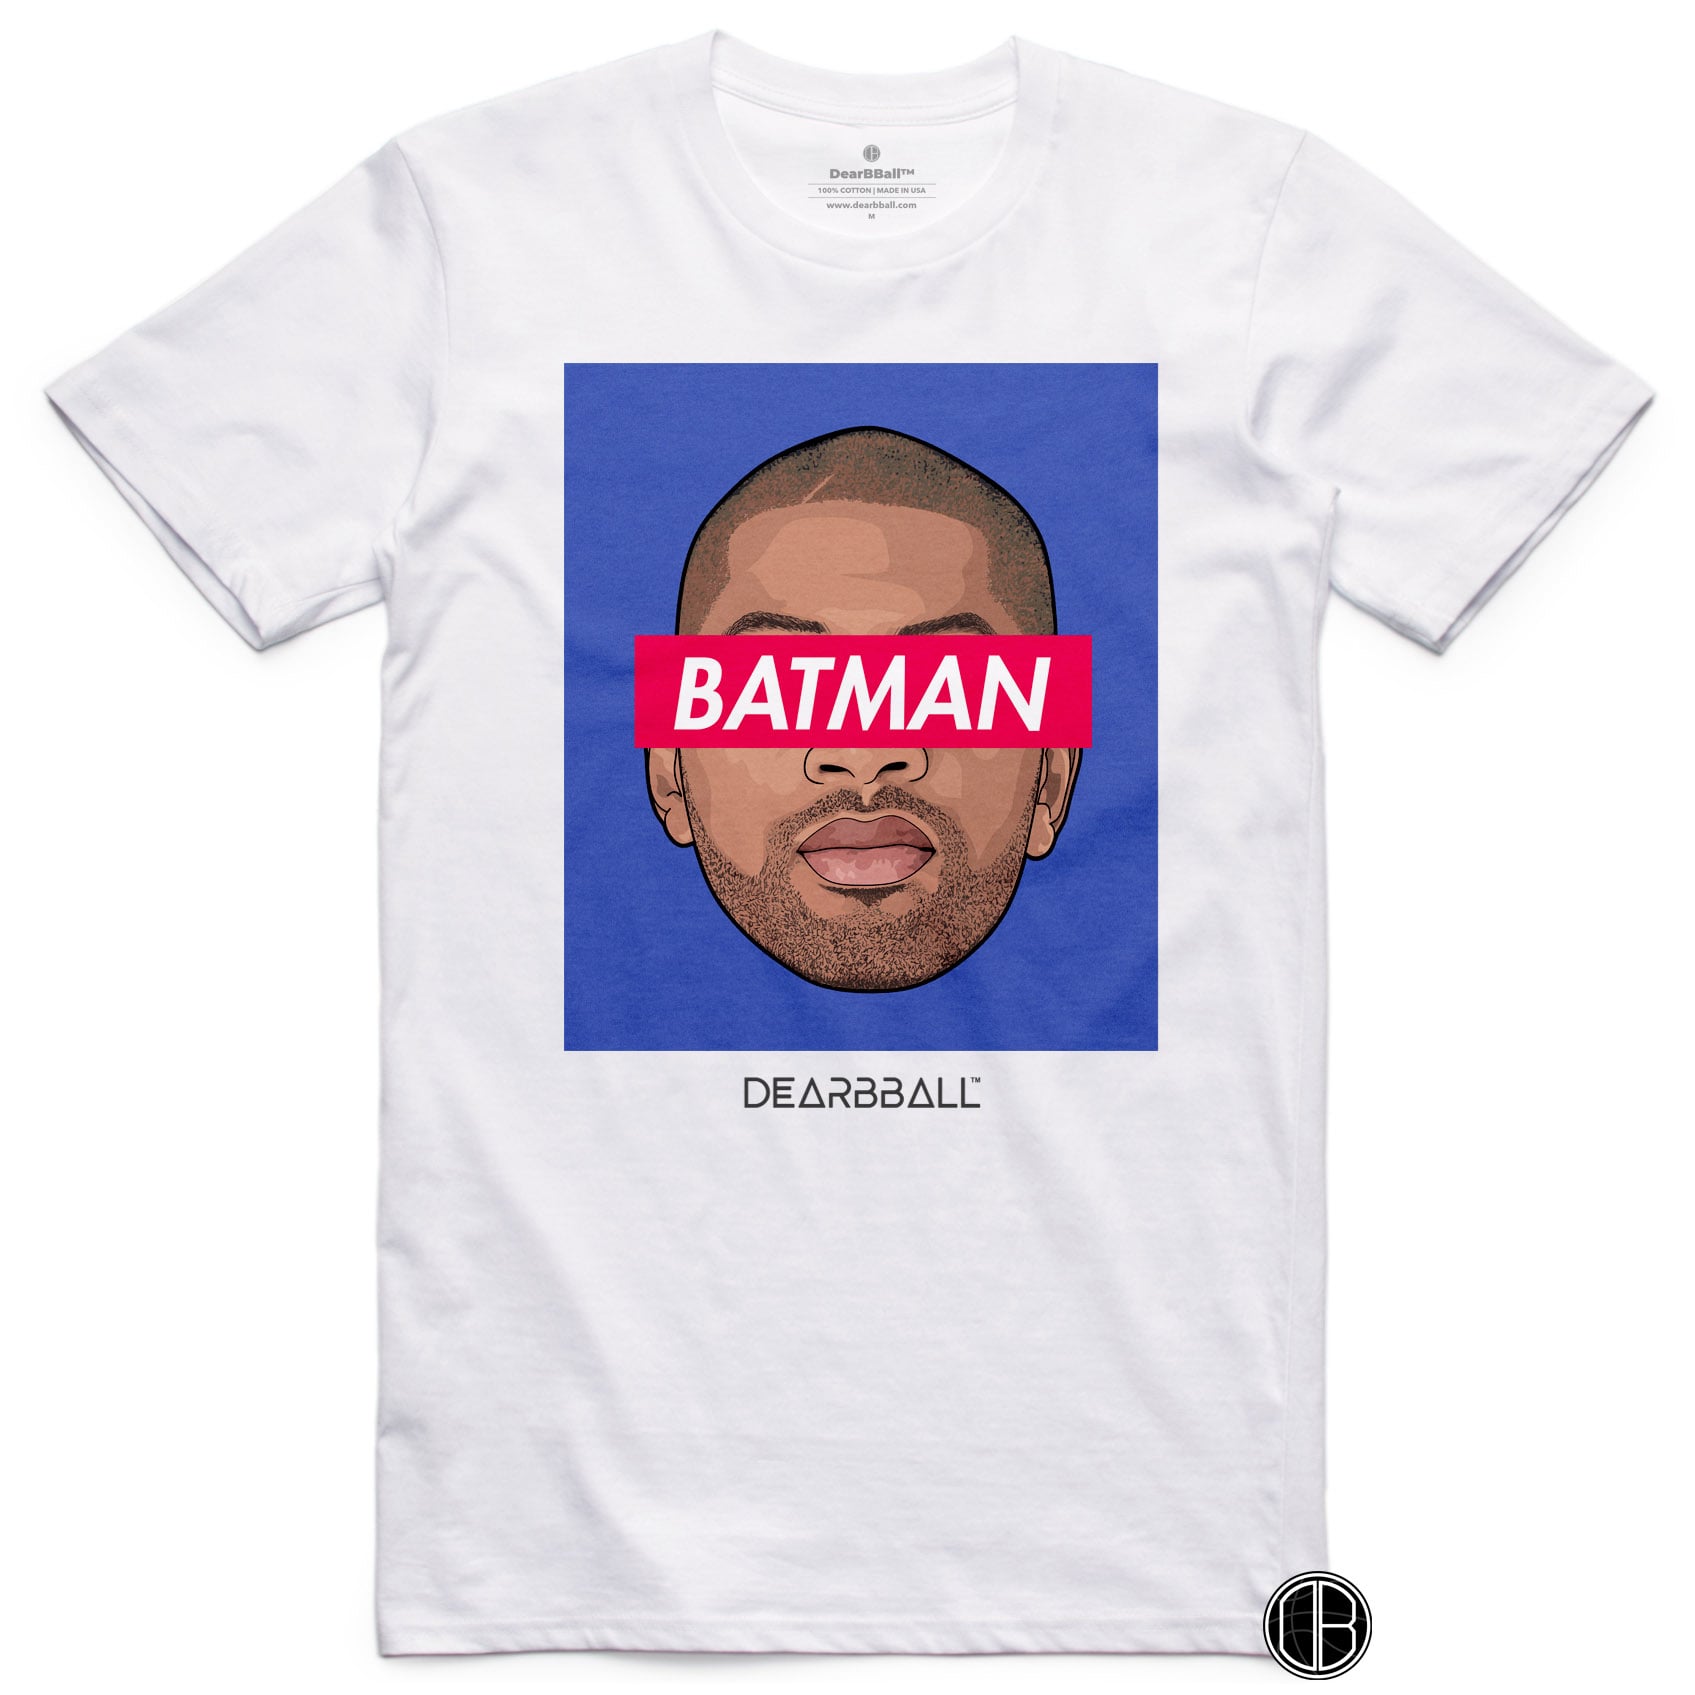 DearBBall T-Shirt - BATMAN Blue Edition